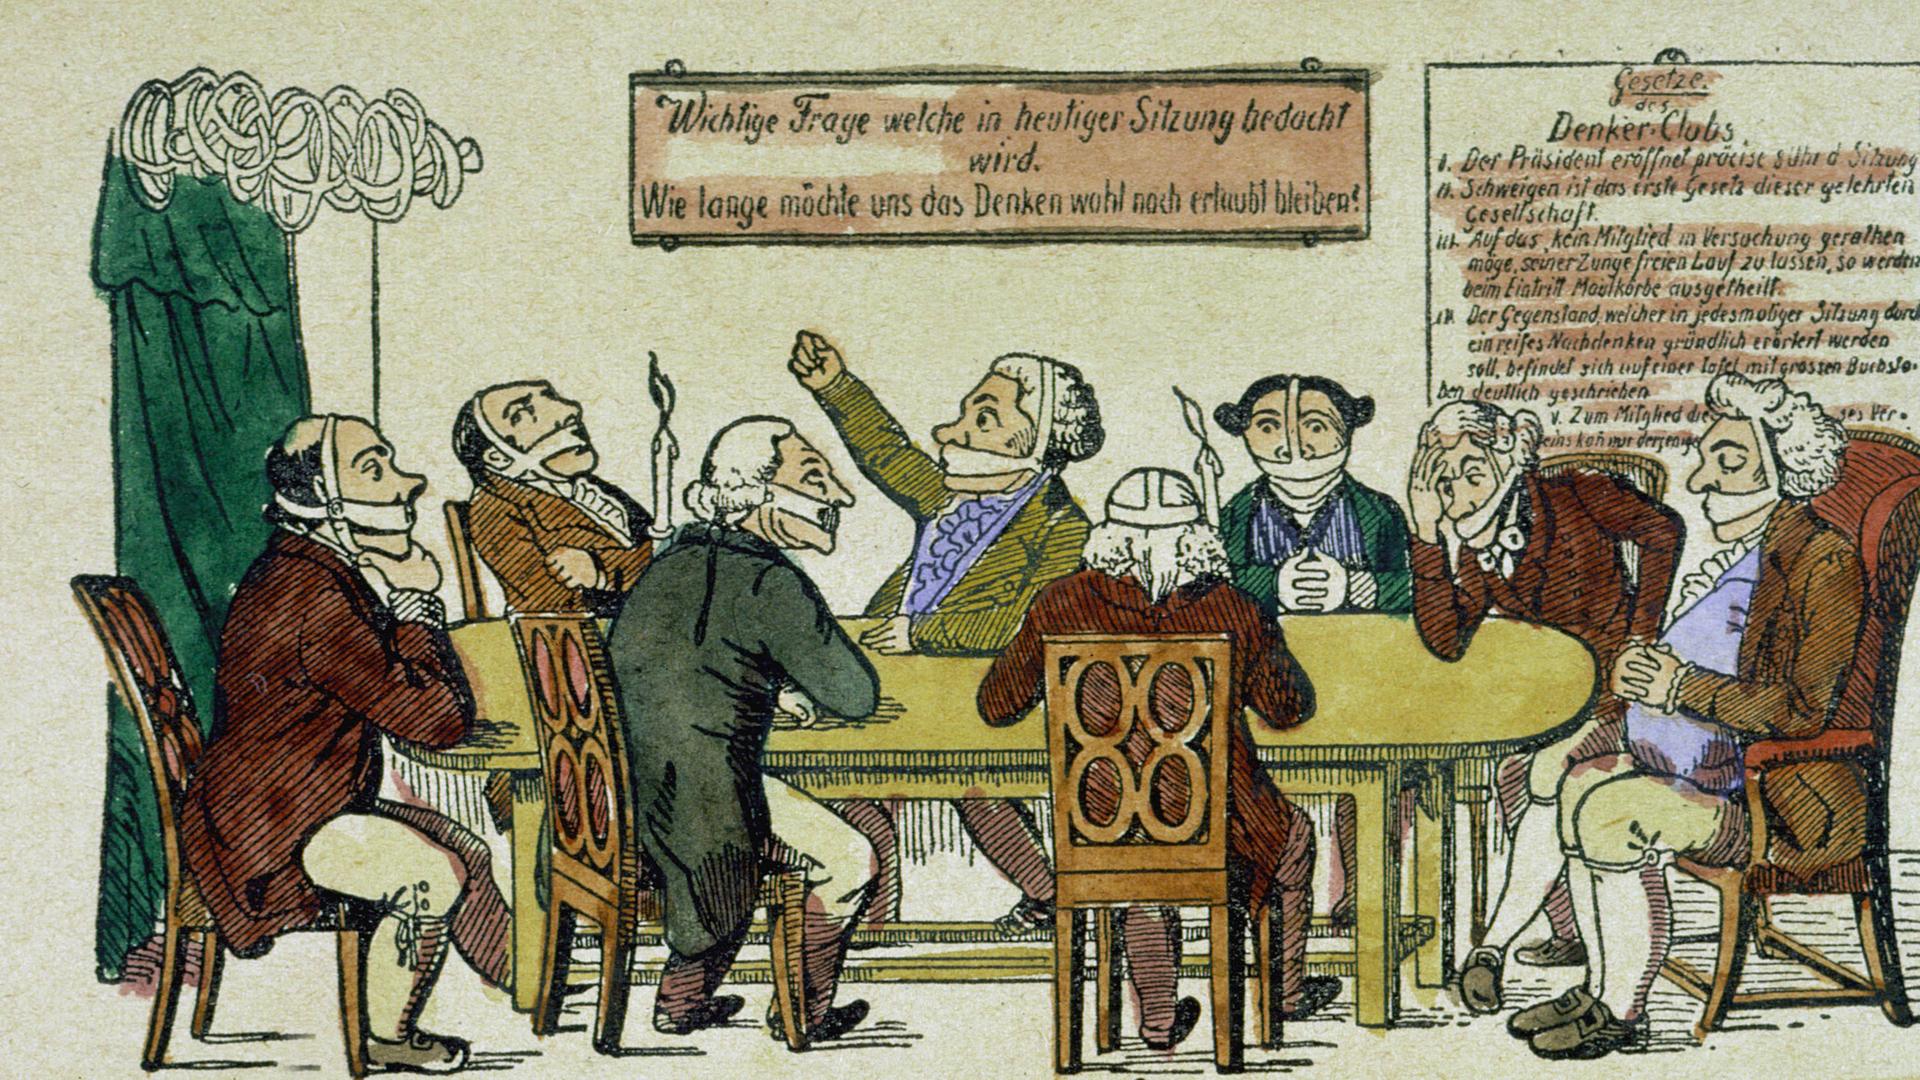 "Der Denker-Club": Eine Karikatur nimmt die Zensur durch die "Karlsbader Beschlüsse" von 1819 aufs Korn. Radierung, koloriert, Deutschland, um 1825.